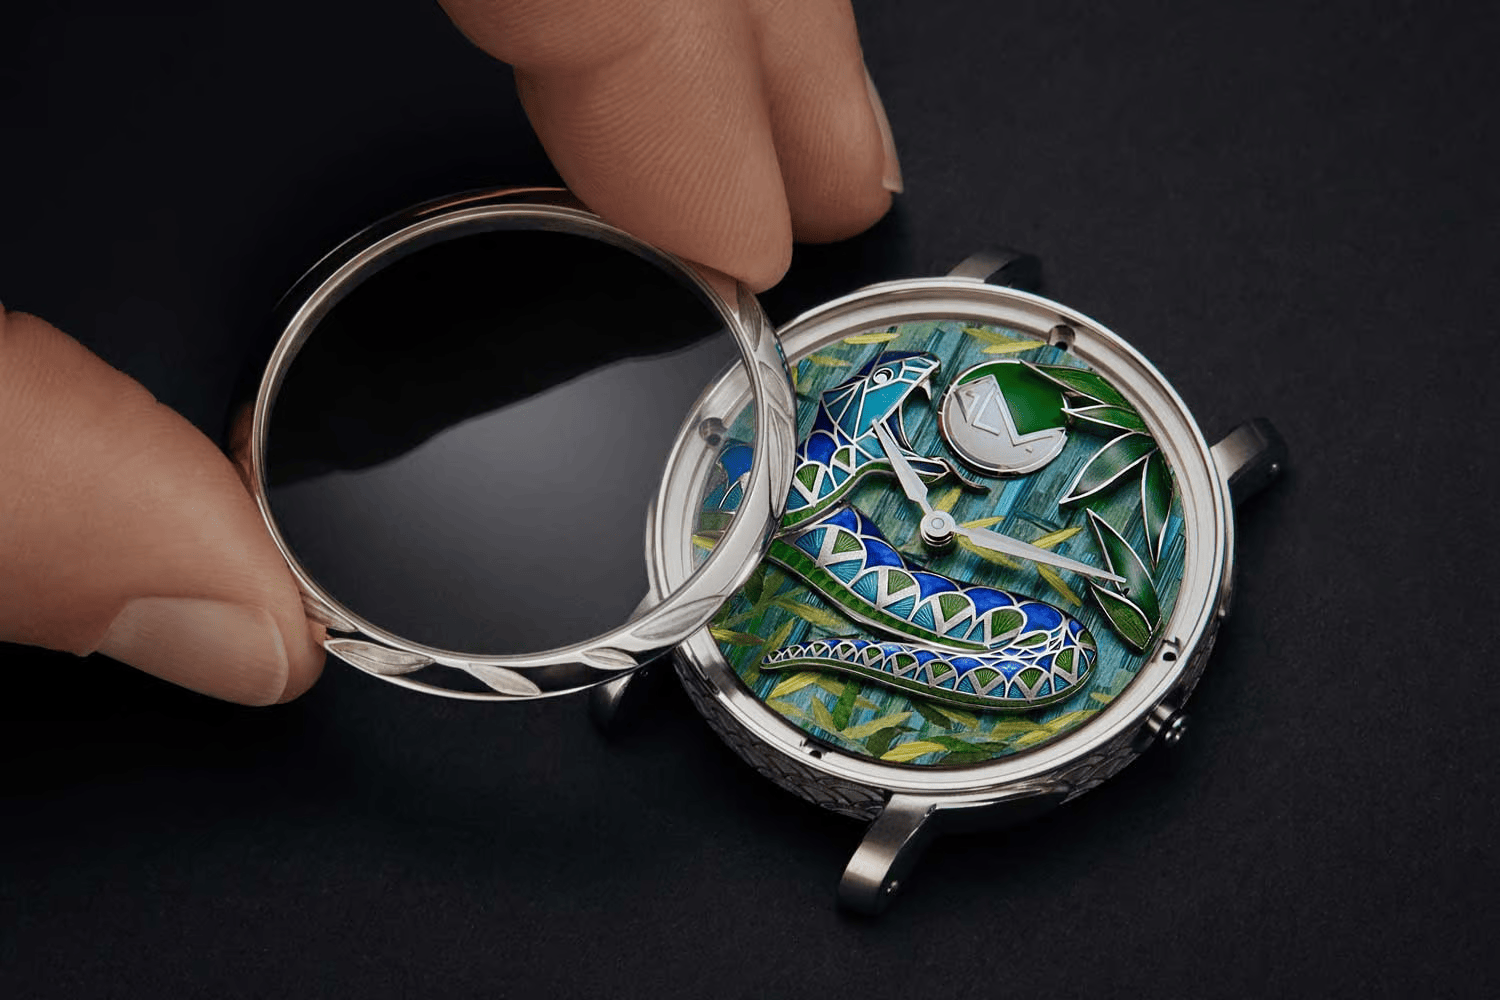 Đồng hồ Louis Vuitton với nghệ thuật Métiers d'Art